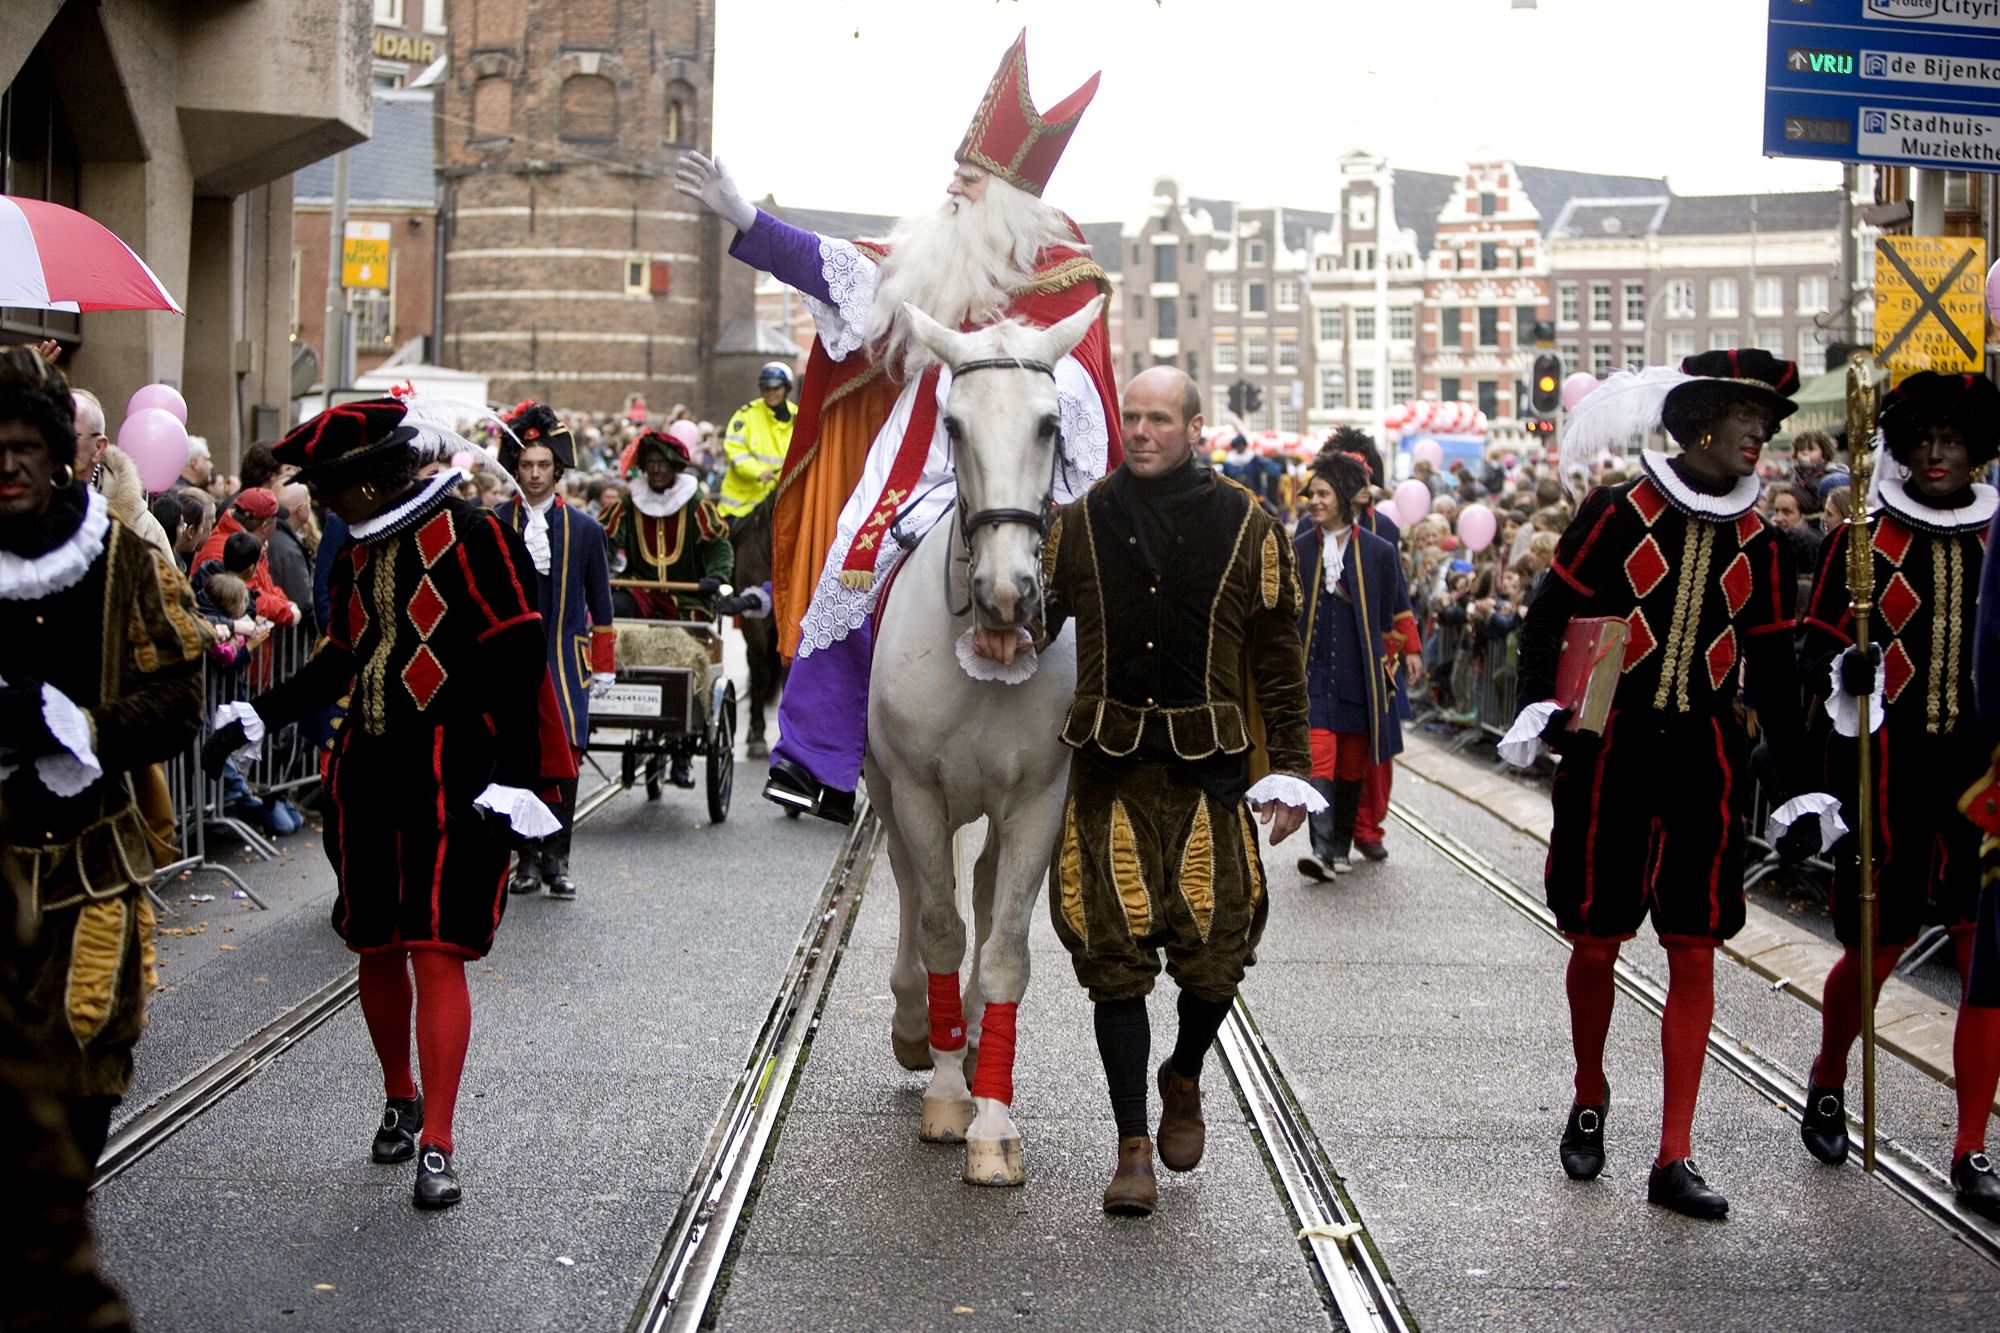 到此一游丨荷兰圣尼古拉斯节,小朋友的狂欢